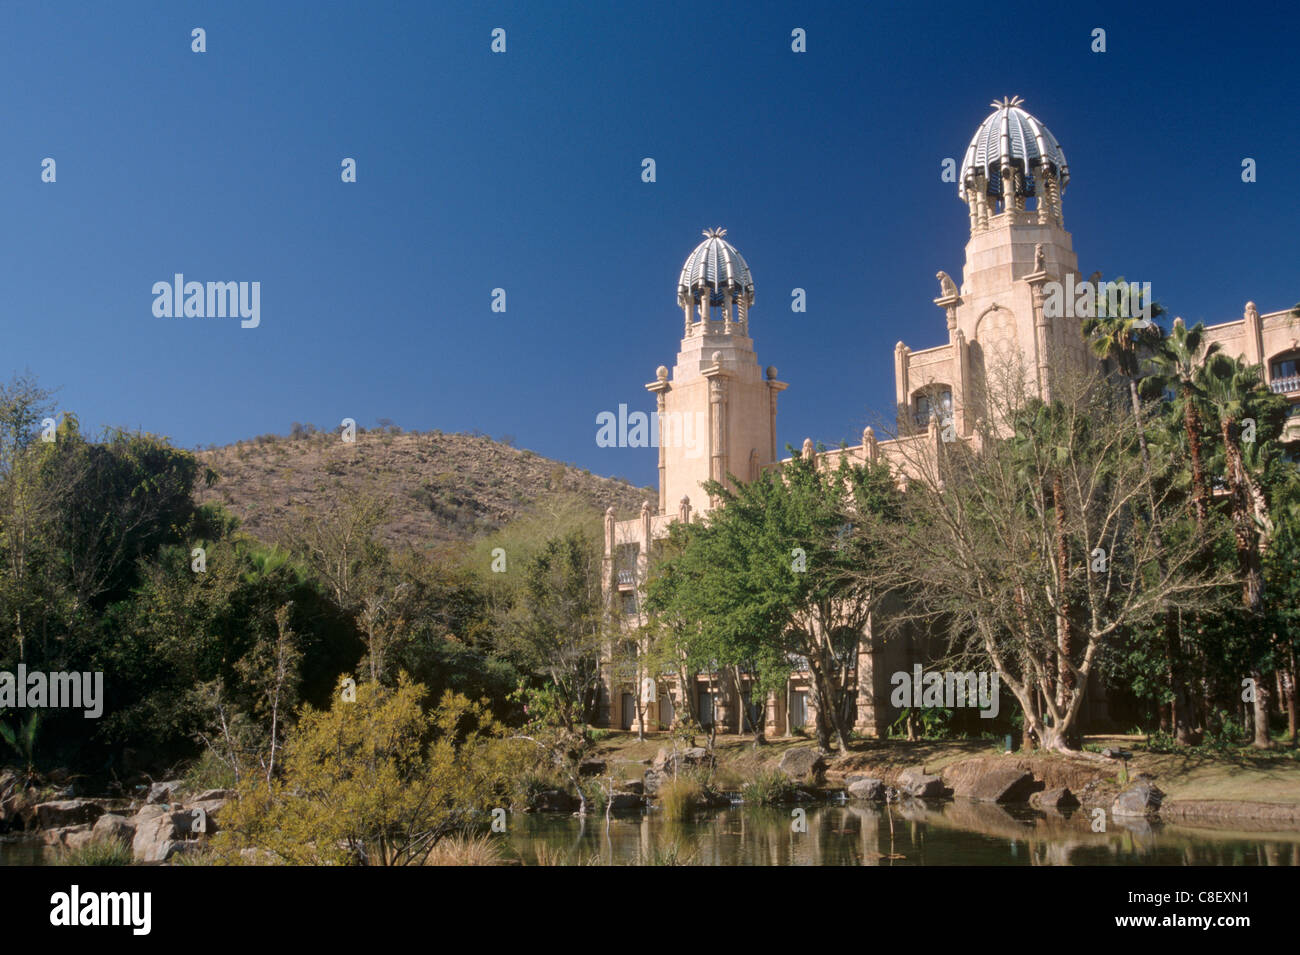 Der Palast der verlorenen Stadt, wichtige touristische Attraktion und Hotel, Sun City, North West Province, Südafrika Stockfoto